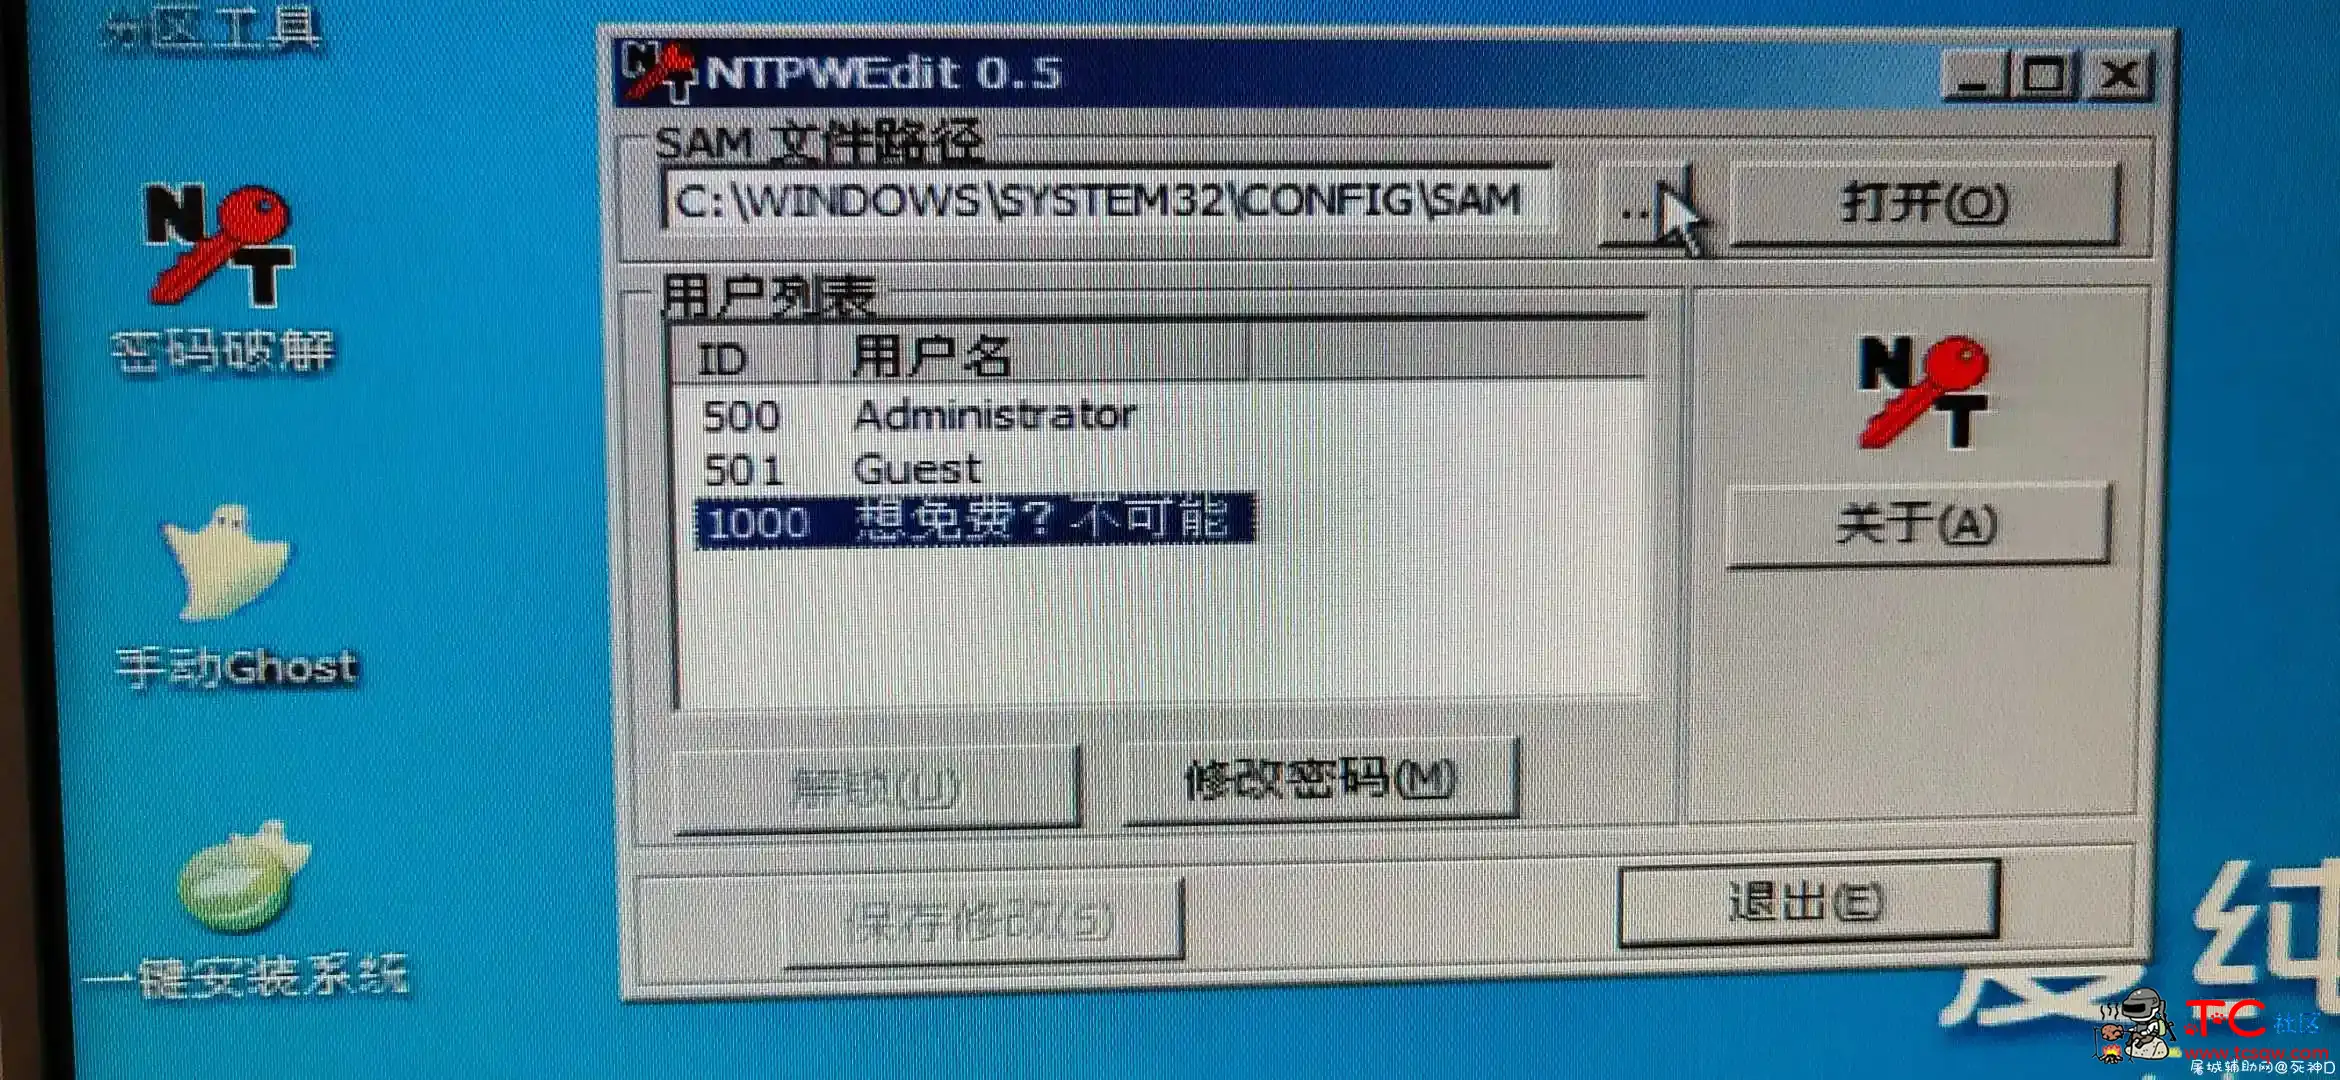 发布锁机软件 屠城辅助网www.tcfz1.com539